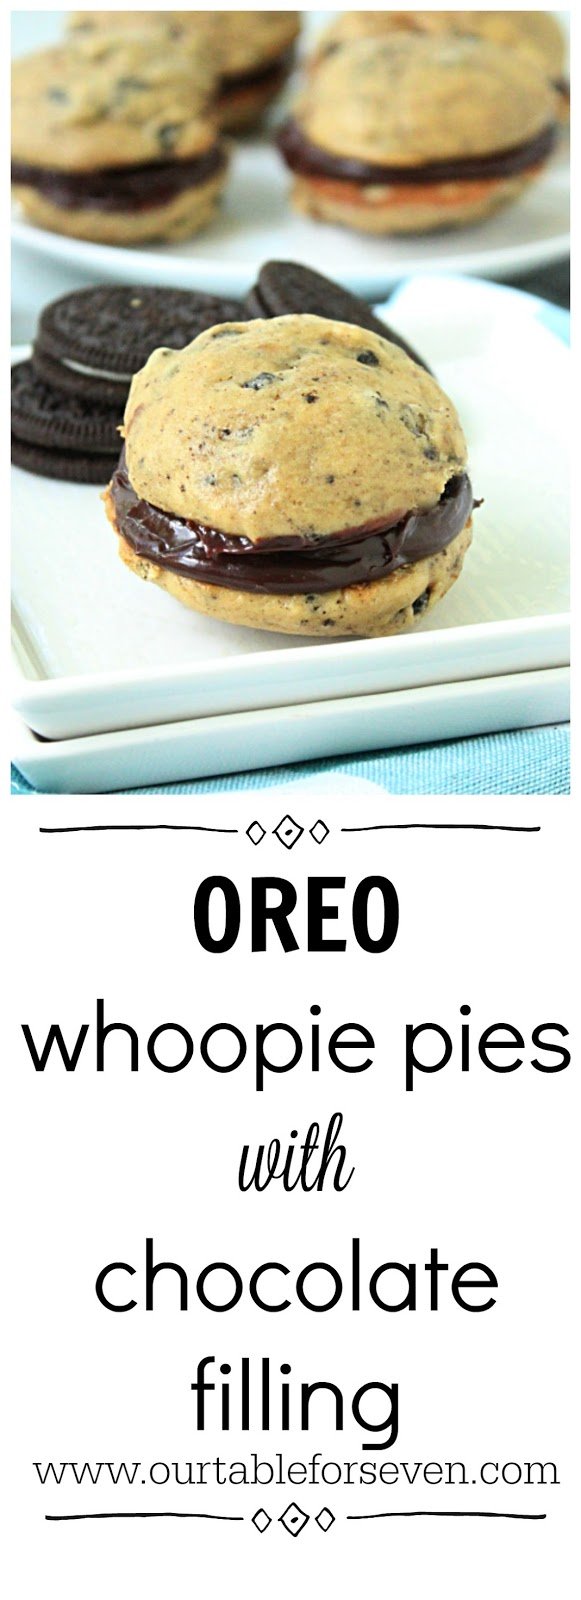 Oreo Whoopie Pies With Chocolate Filling #tableforsevenblog #whoopiepies #oreocookies #chocolatefilling